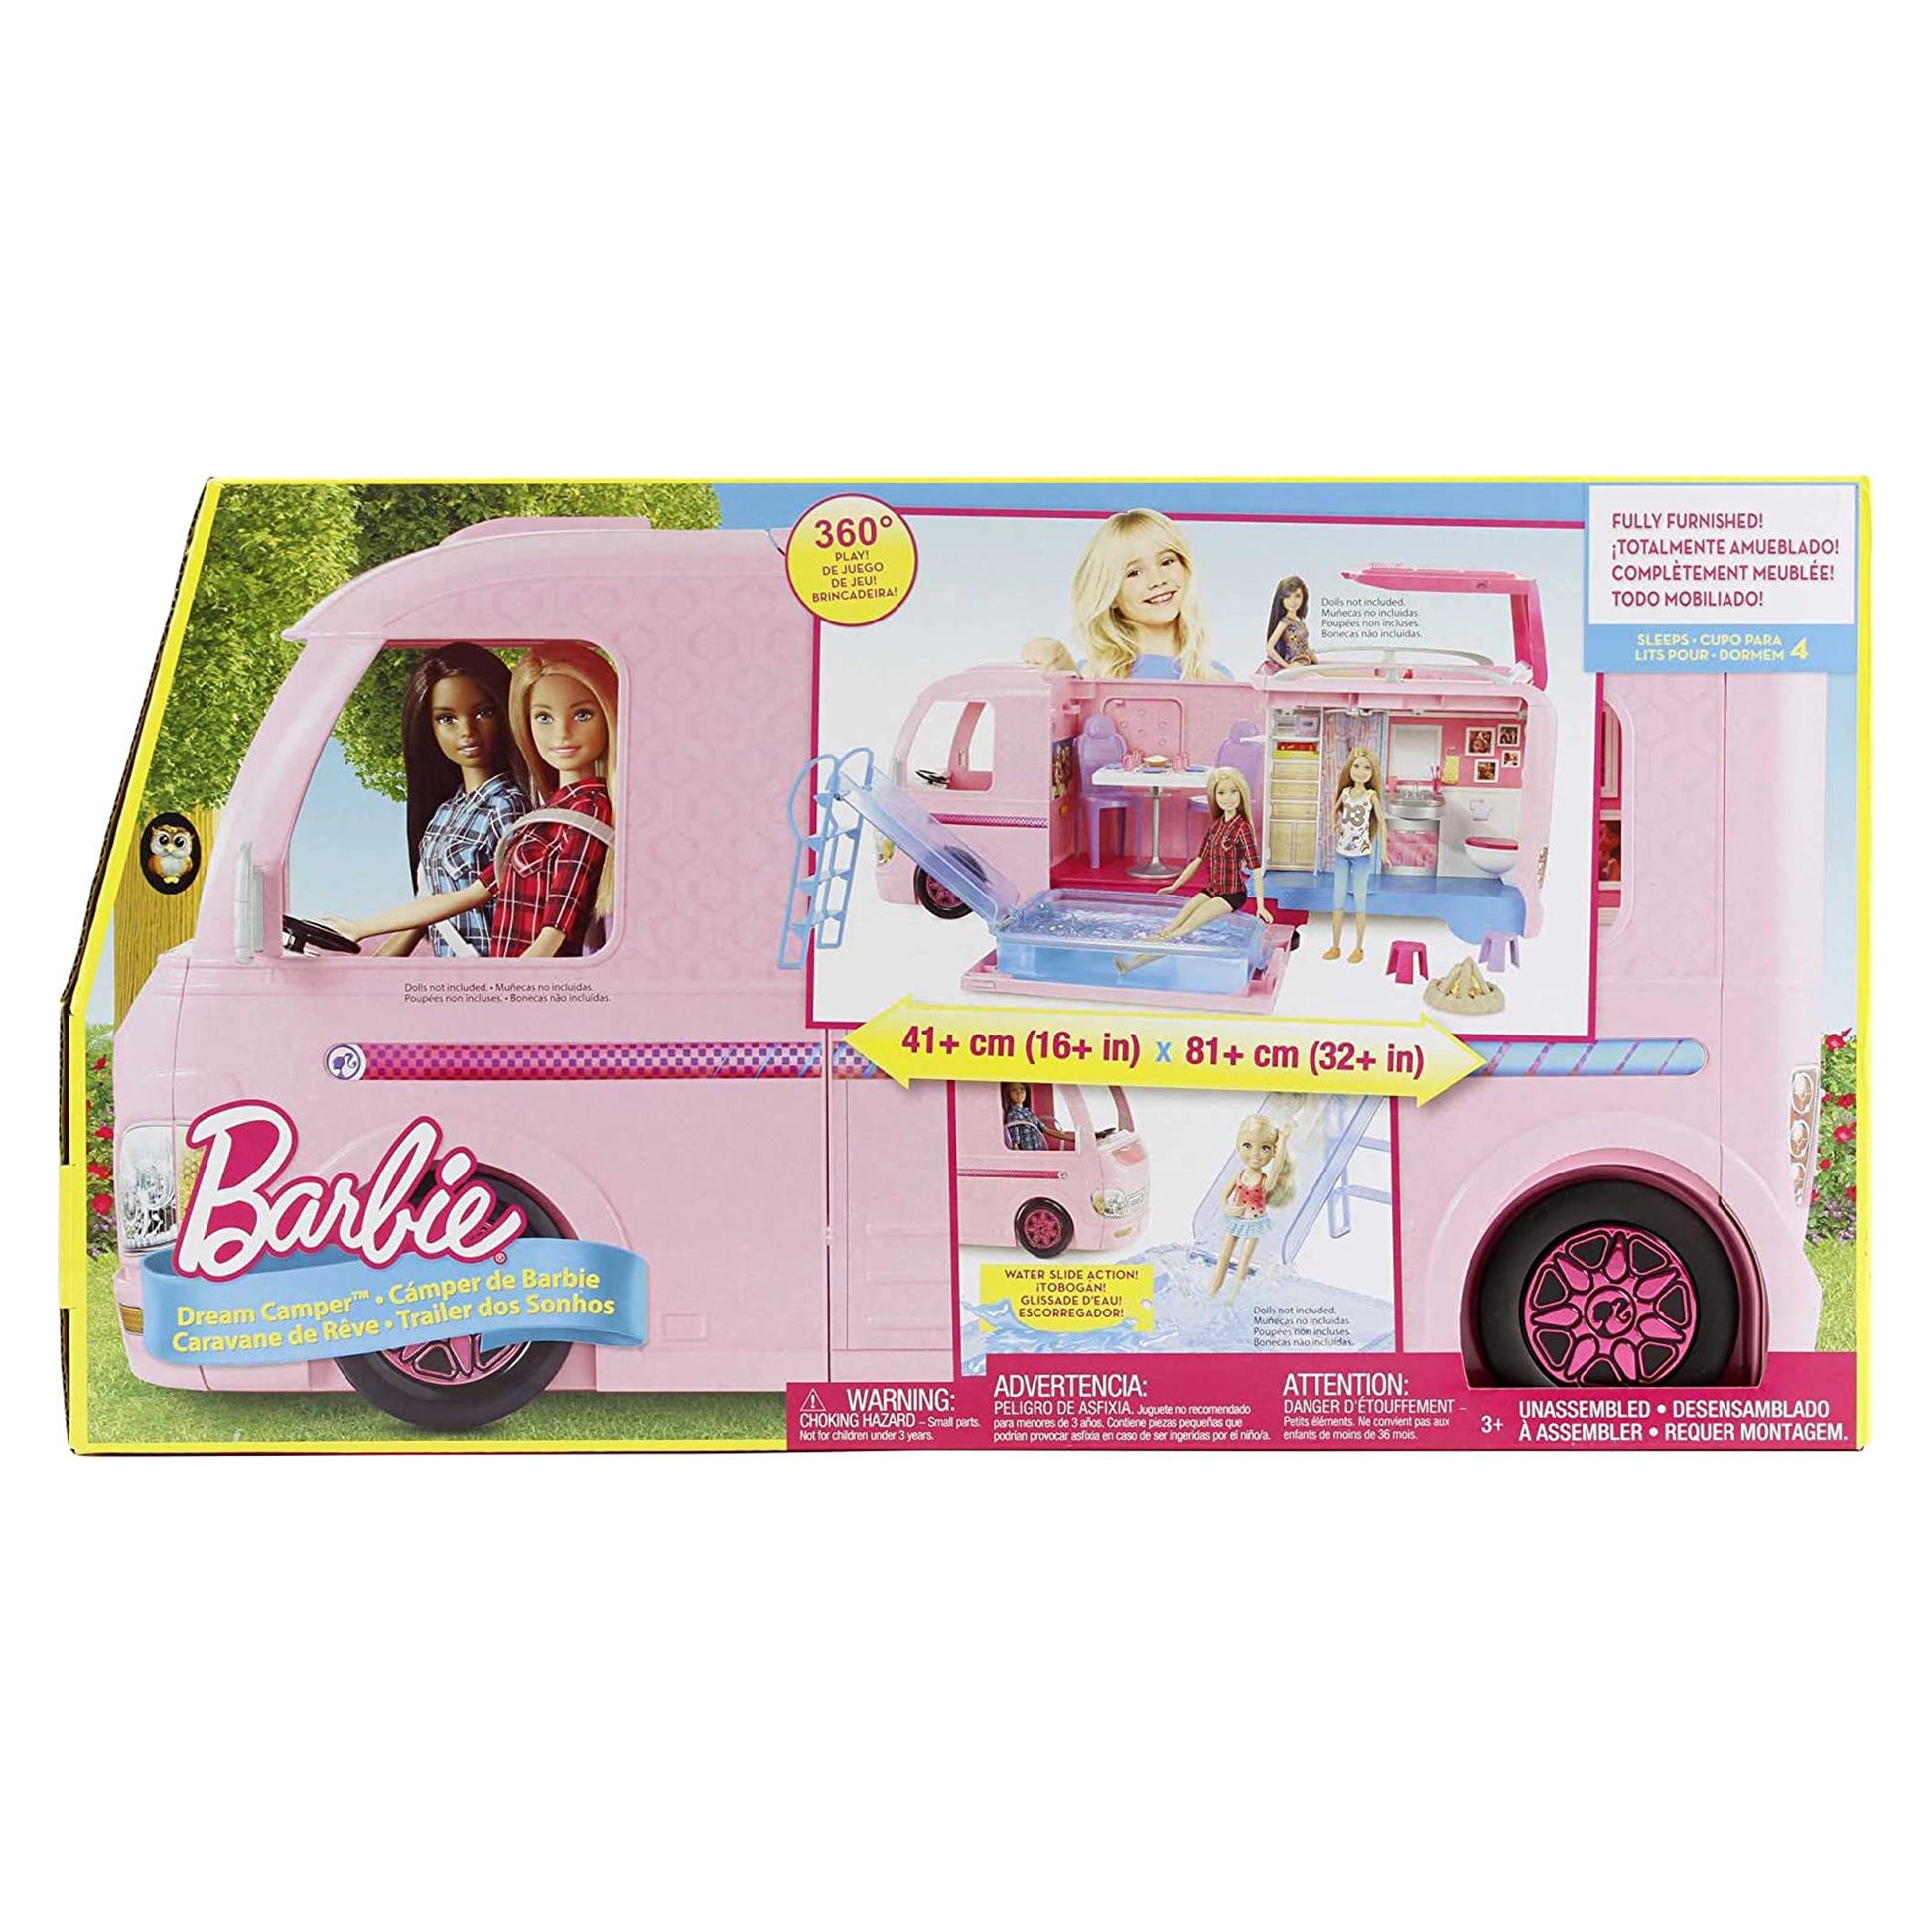 Barbie FBR34 - Super Abenteuer Camper, Puppen Camping Wohnwagen mit Zubehör, Mädchen Spielzeug ab 3 Jahren [Exklusiv bei Amazon]